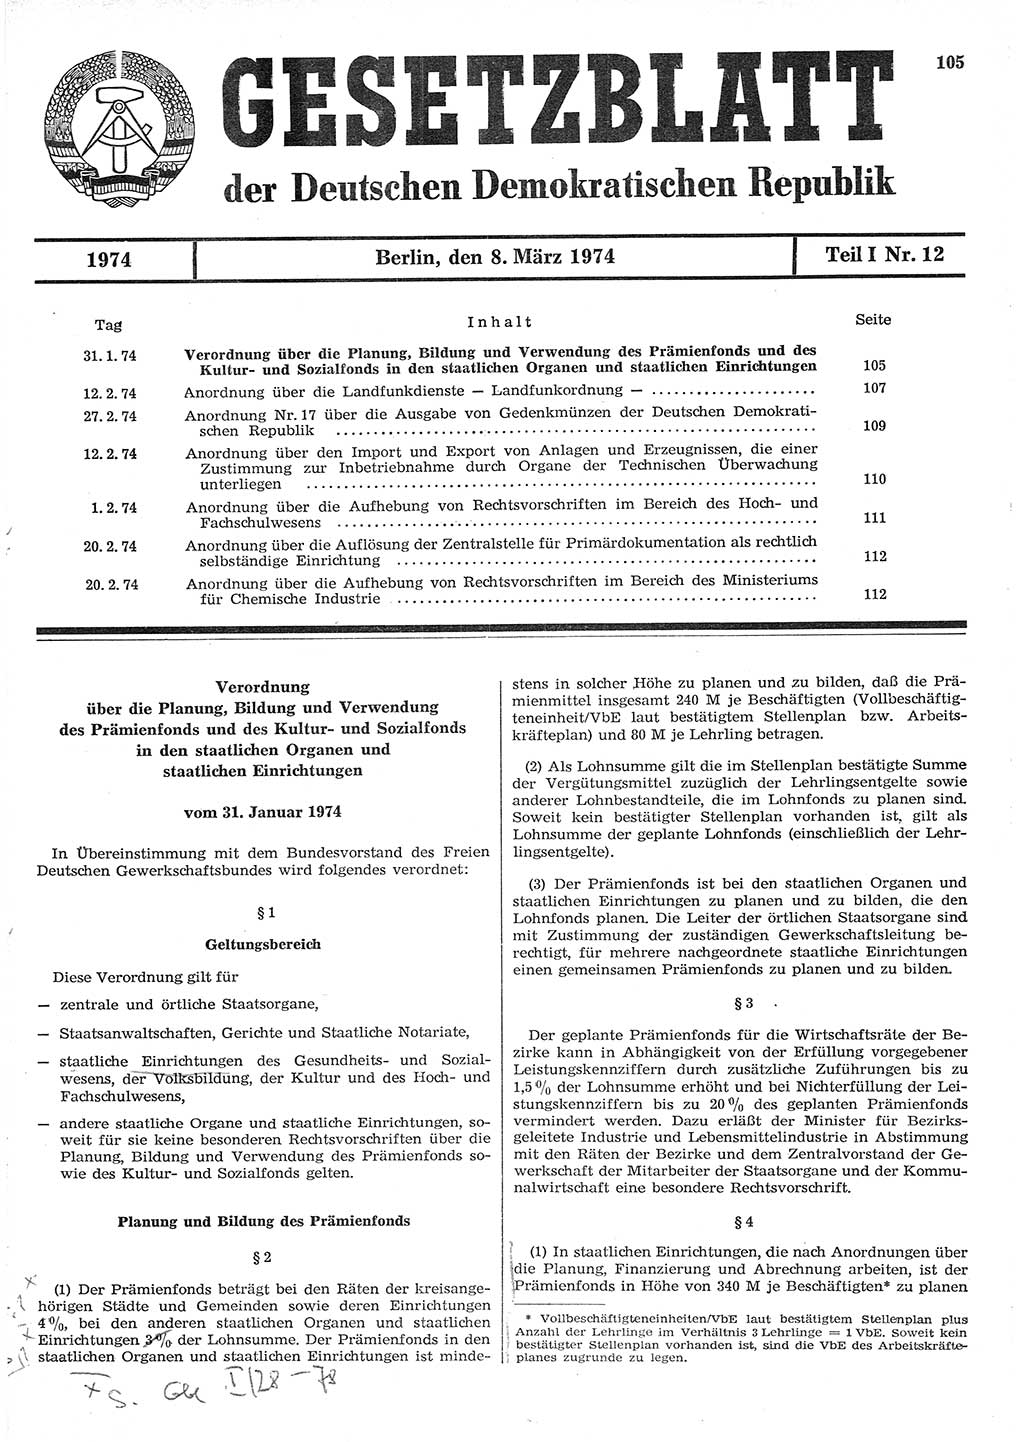 Gesetzblatt (GBl.) der Deutschen Demokratischen Republik (DDR) Teil Ⅰ 1974, Seite 105 (GBl. DDR Ⅰ 1974, S. 105)